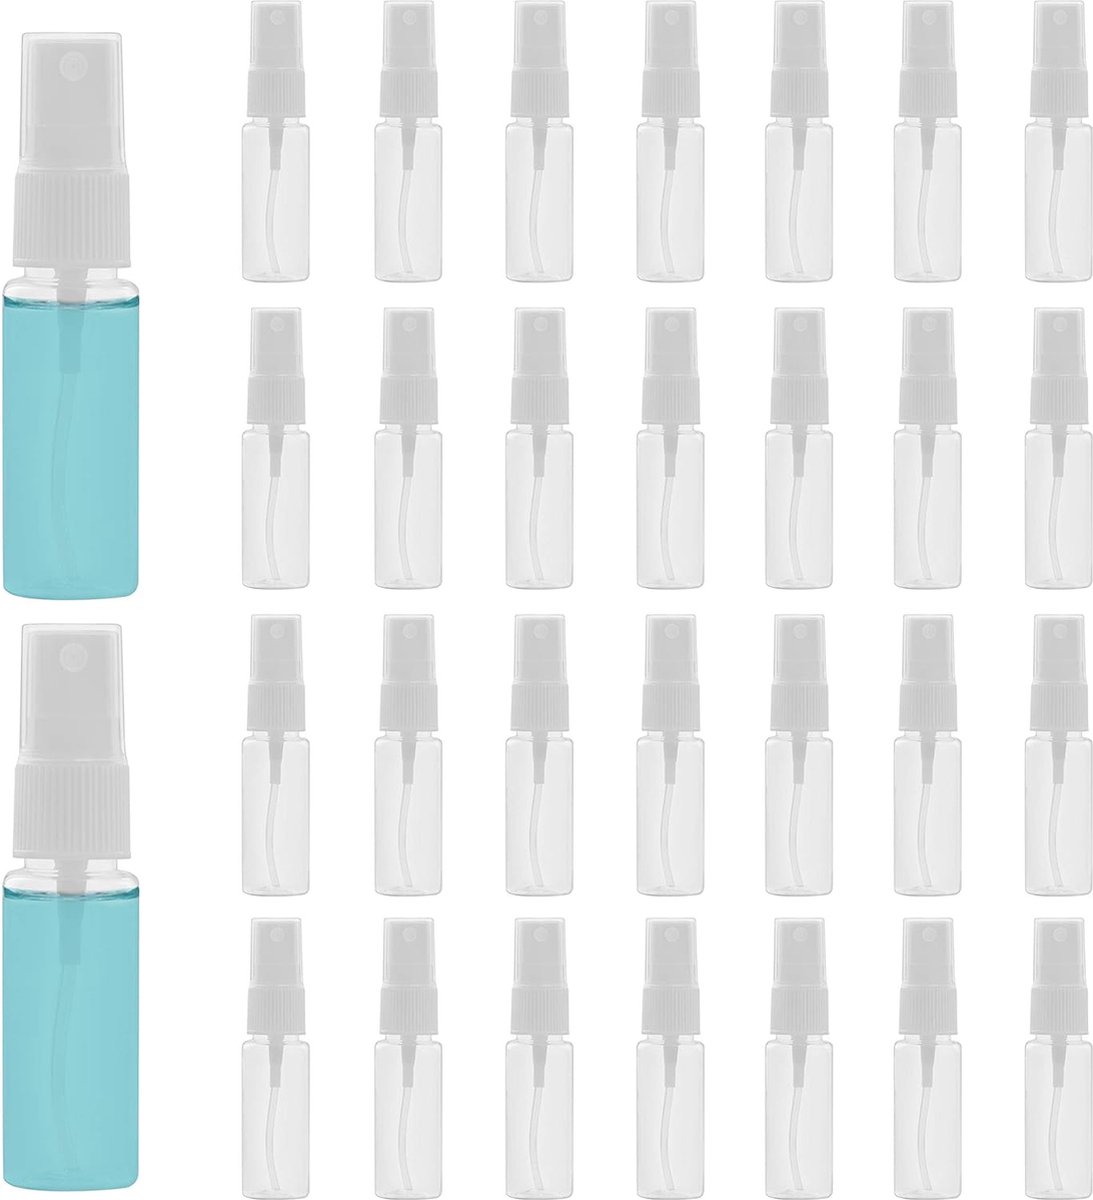 Hervulbare Verstuiver Spray Flesjes - Set van 30 - Draagbare Parfumflesjes - Navulbaar Design - Reisflacons voor Onderweg - 5 ml Inhoud - Transparant met Zilveren Details